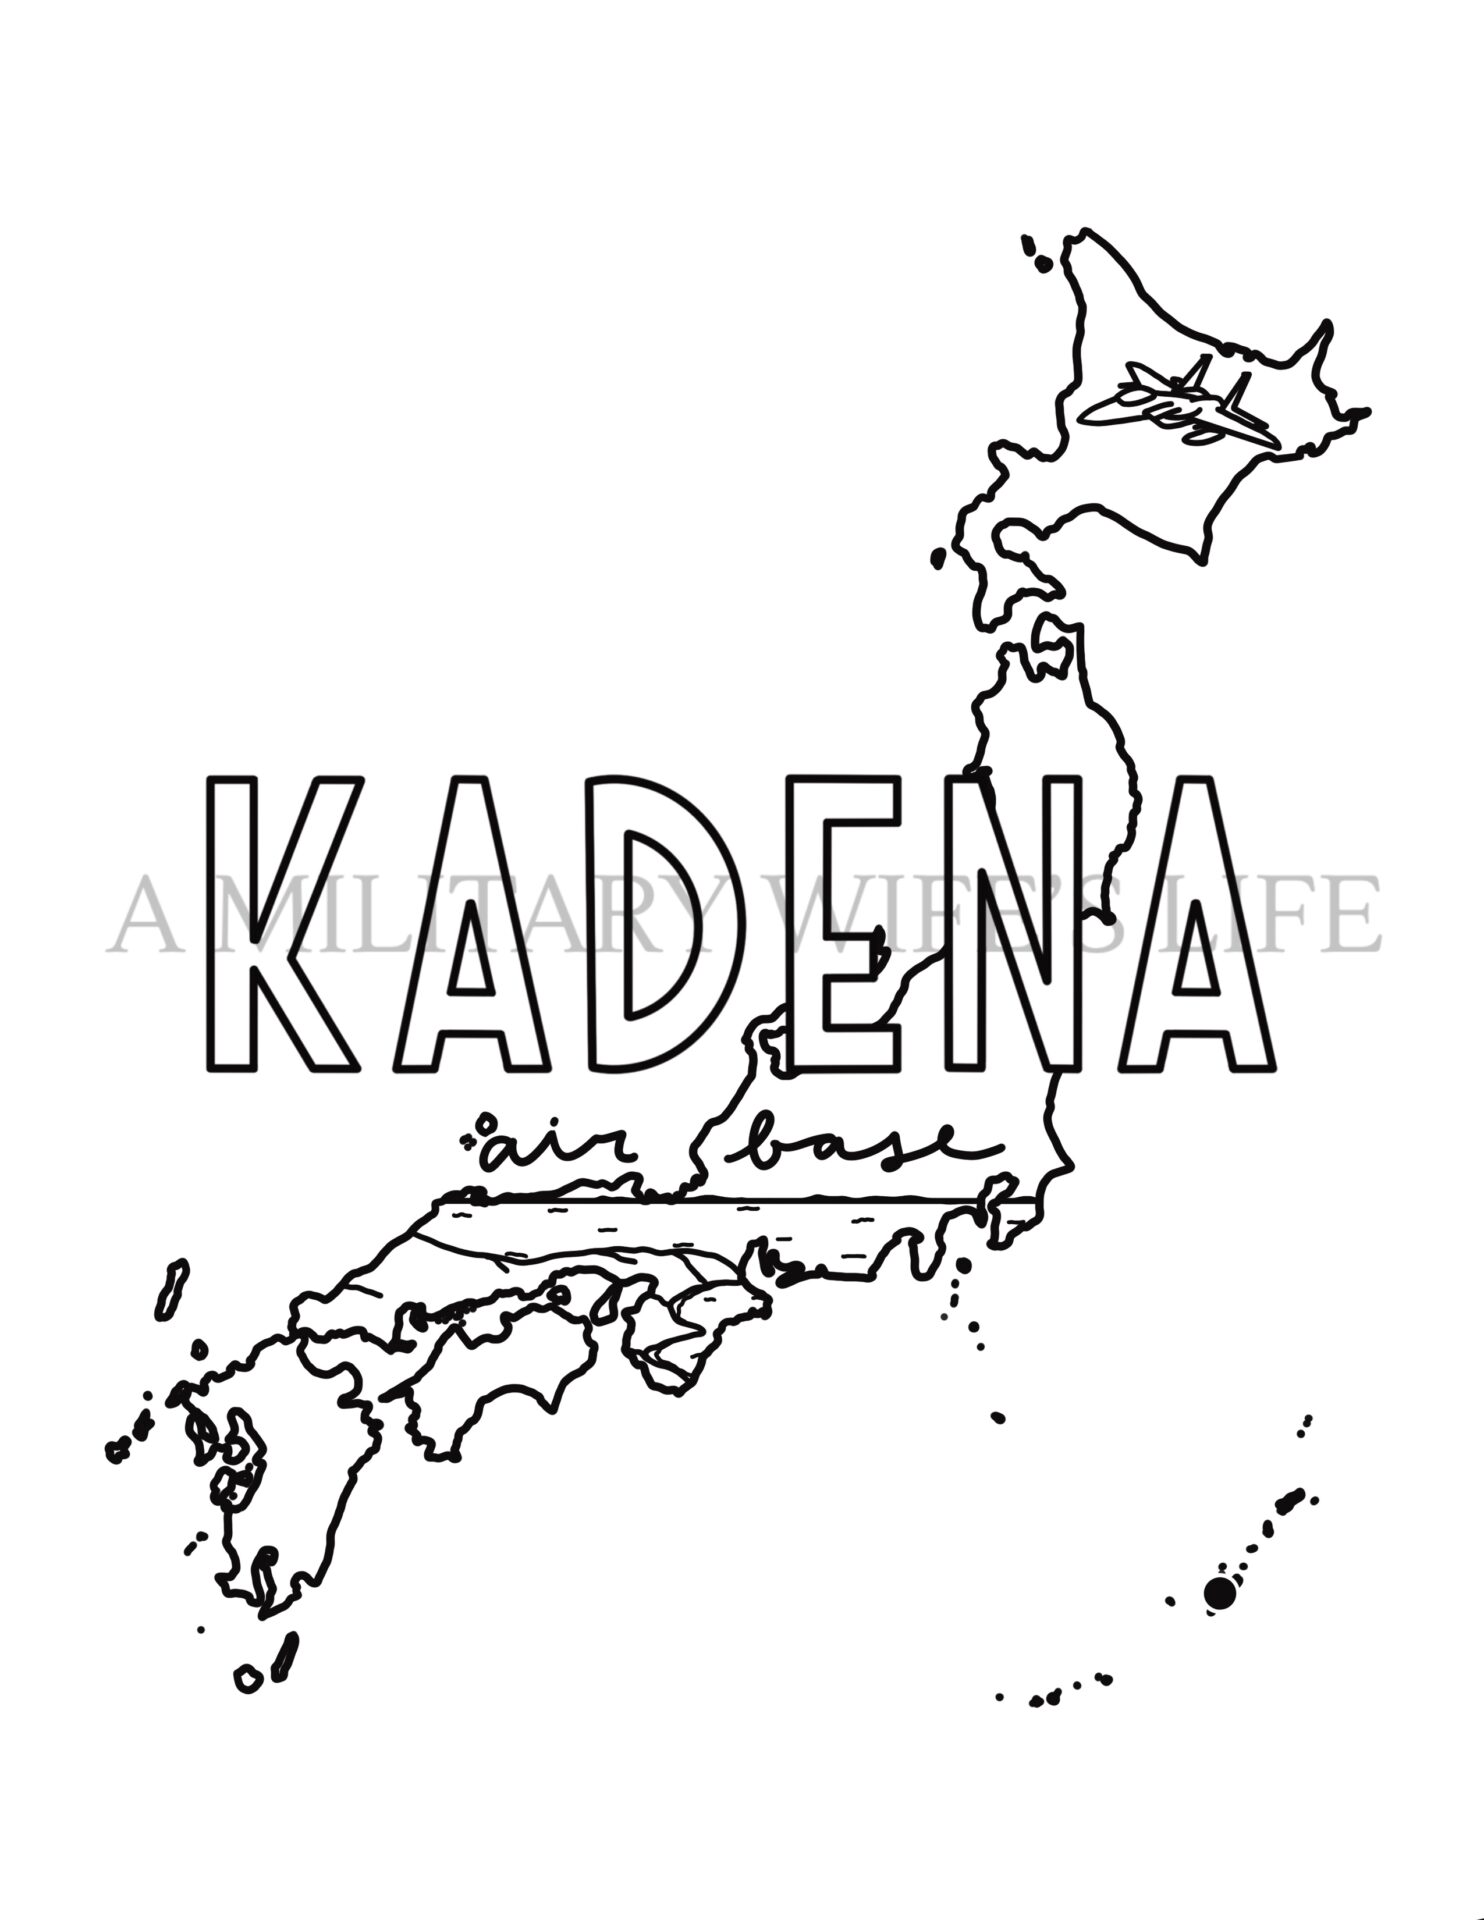 Kadena-air-base